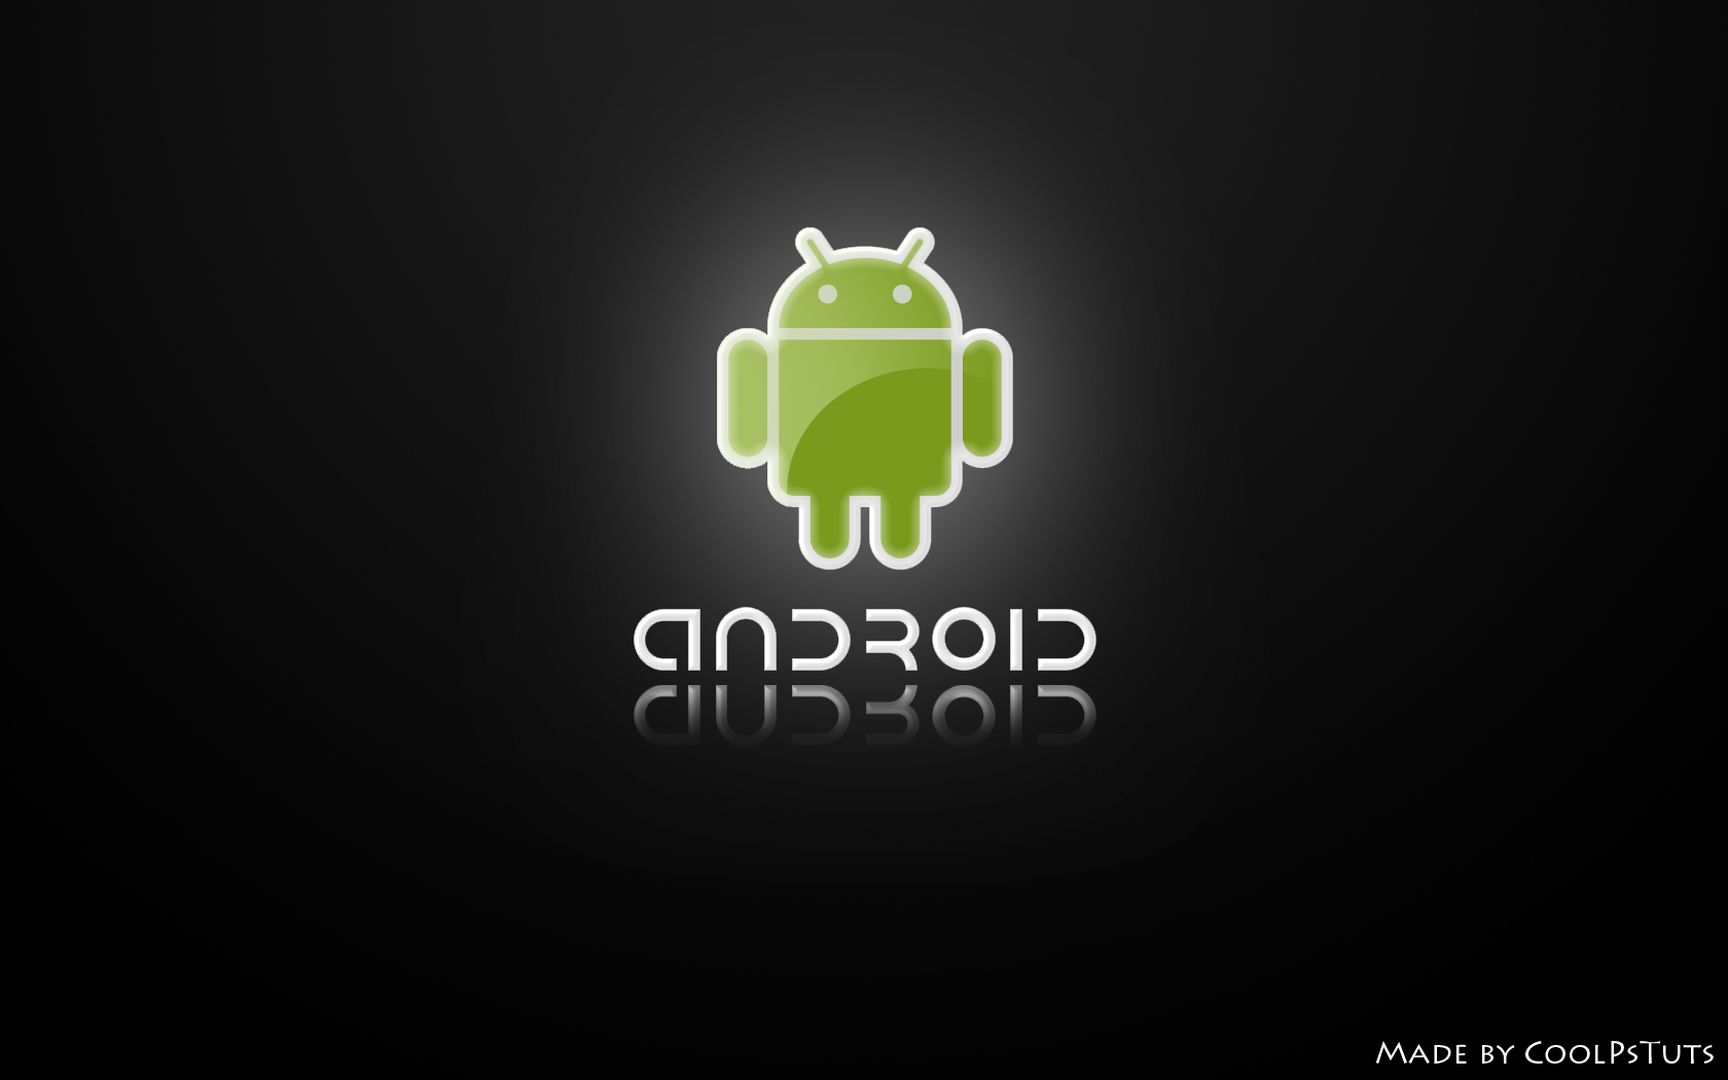 Android安卓系统环保绿色背景简约风格高清桌面大图